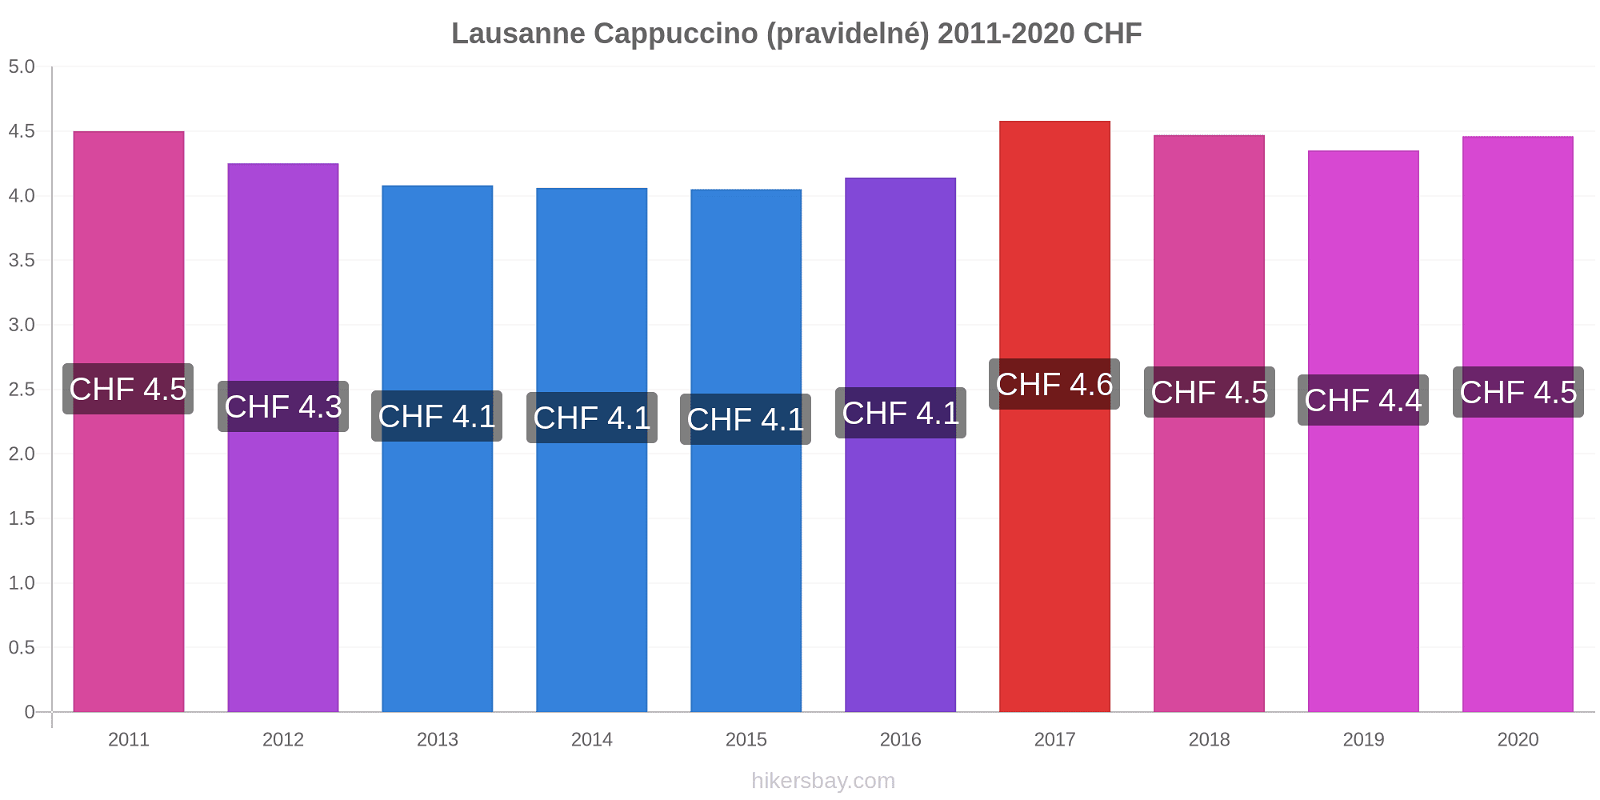 Lausanne změny cen Cappuccino (pravidelné) hikersbay.com